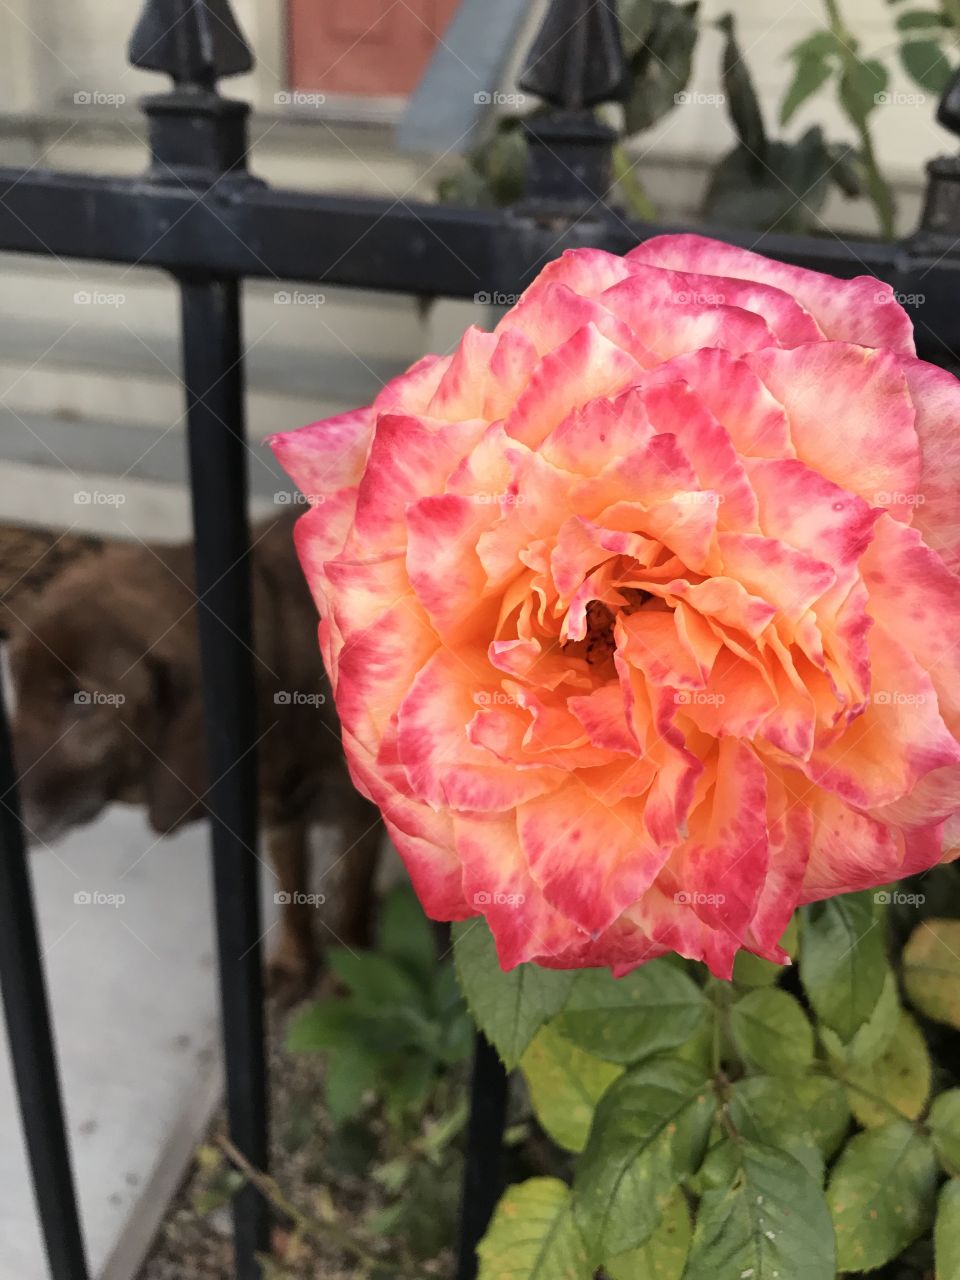 Garden rose closeup and dog